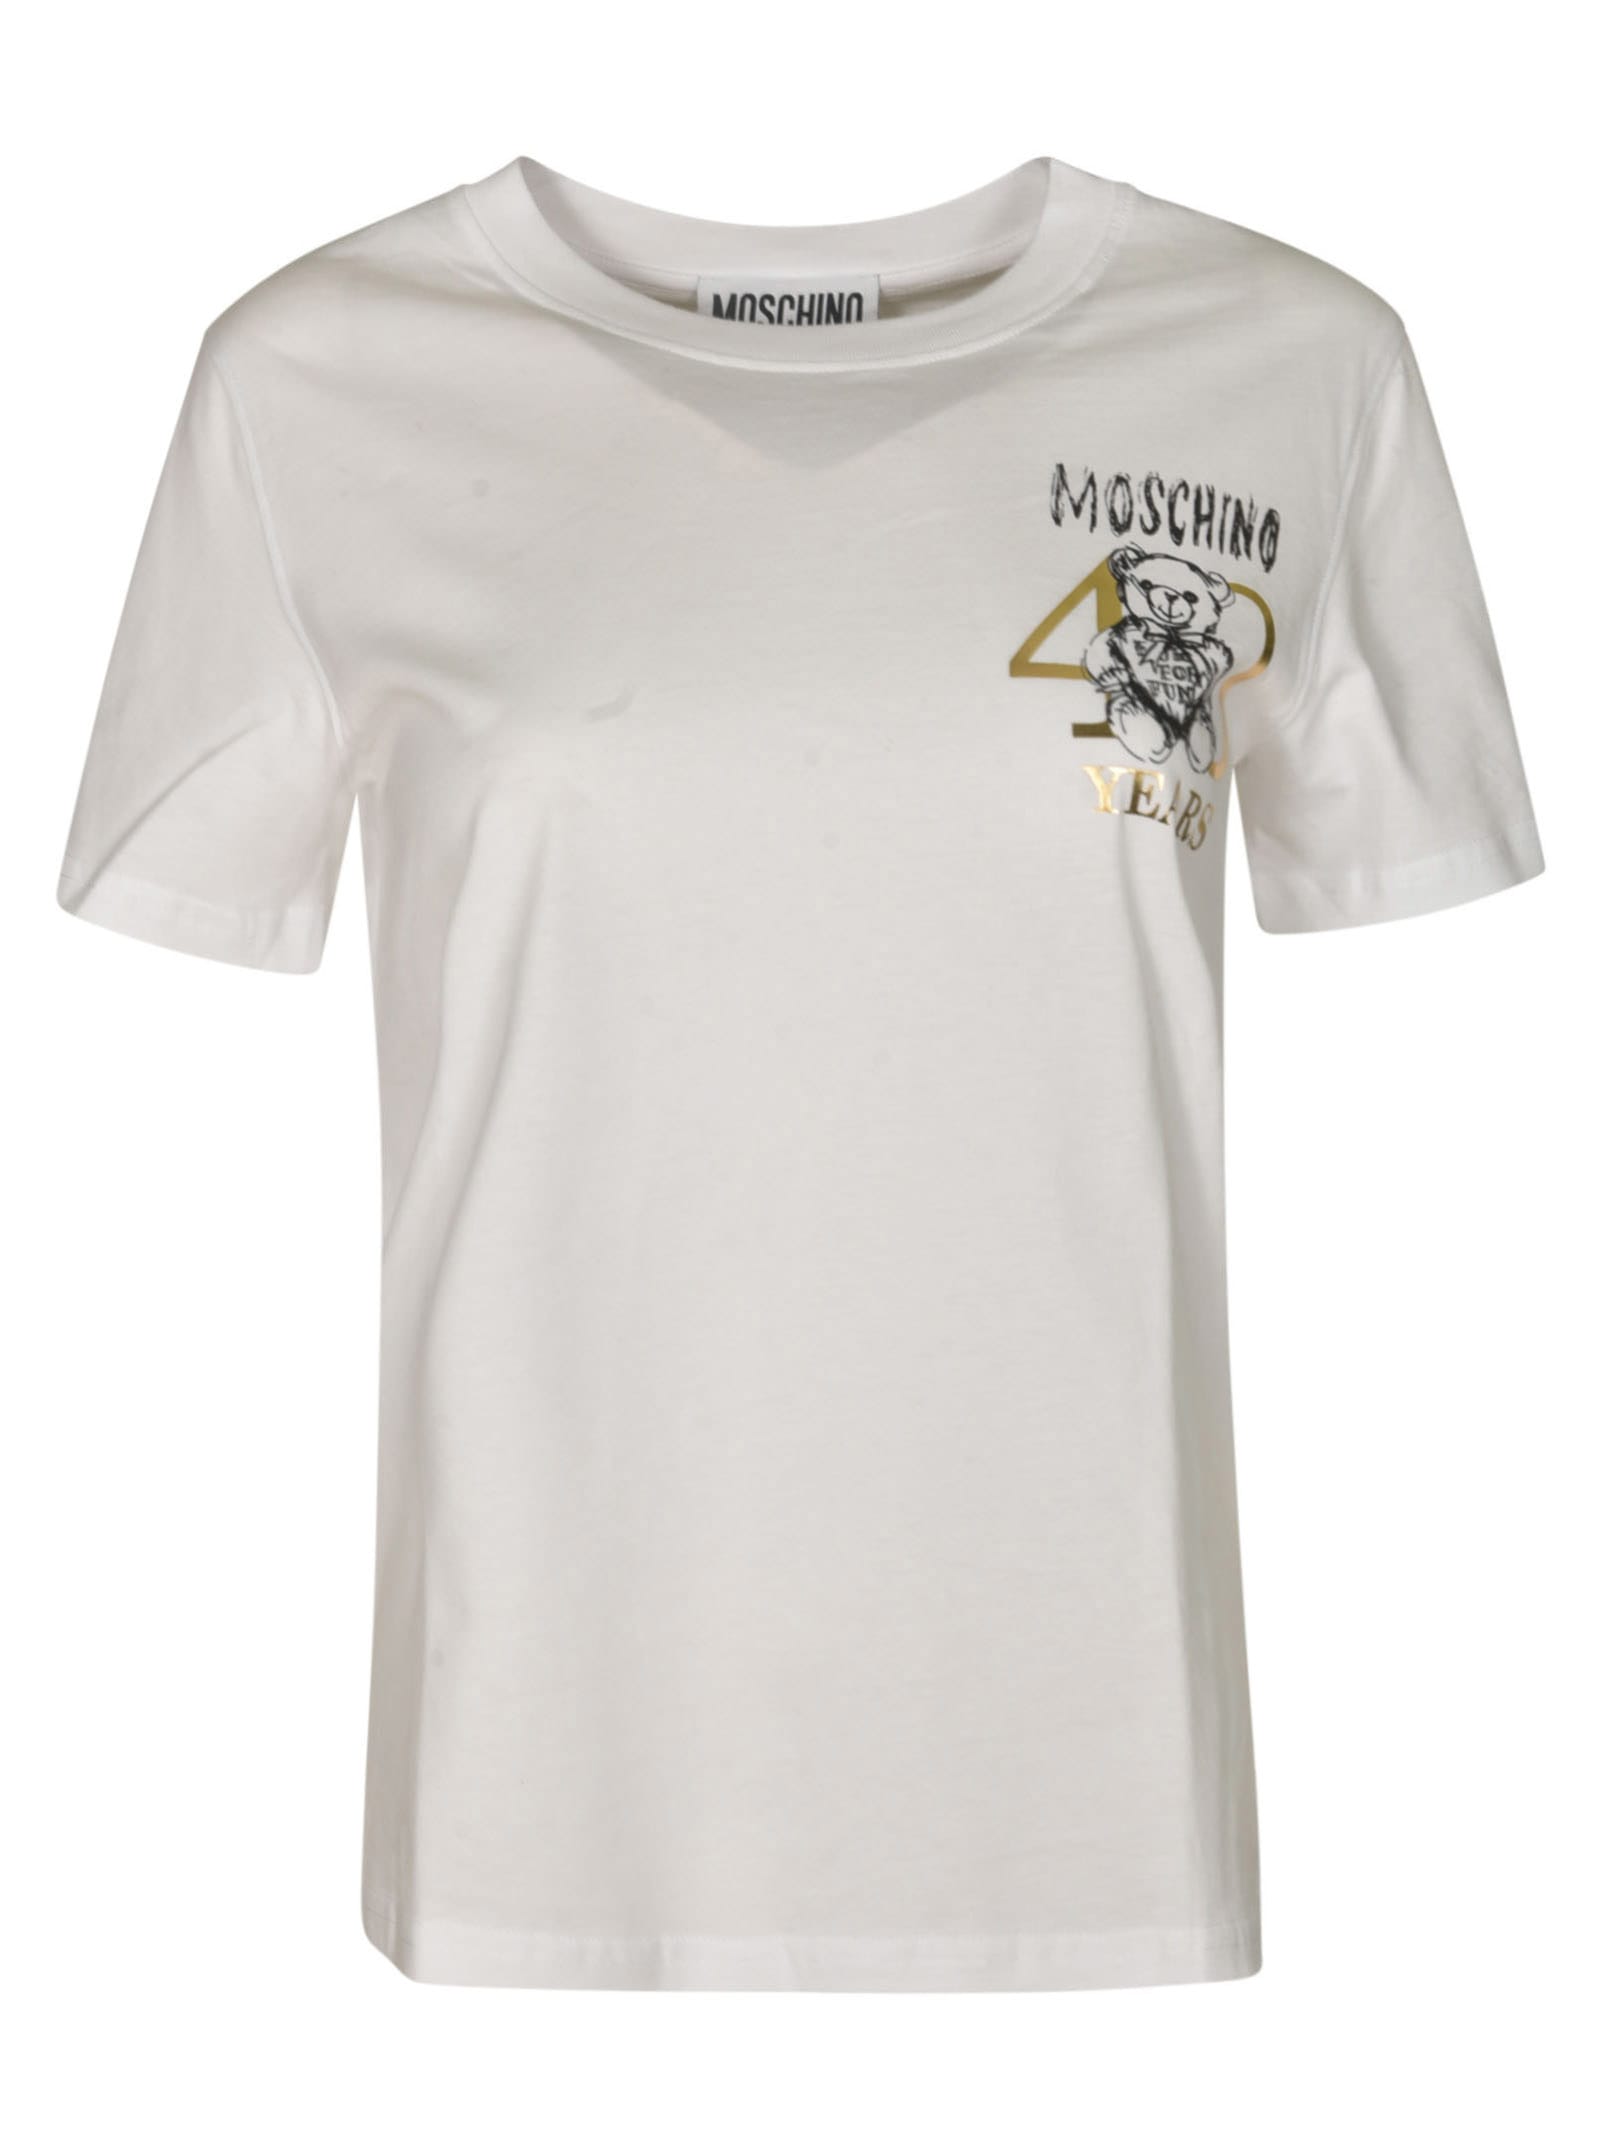 Moschino Teddy 40 Years Of Love T-shirt In White